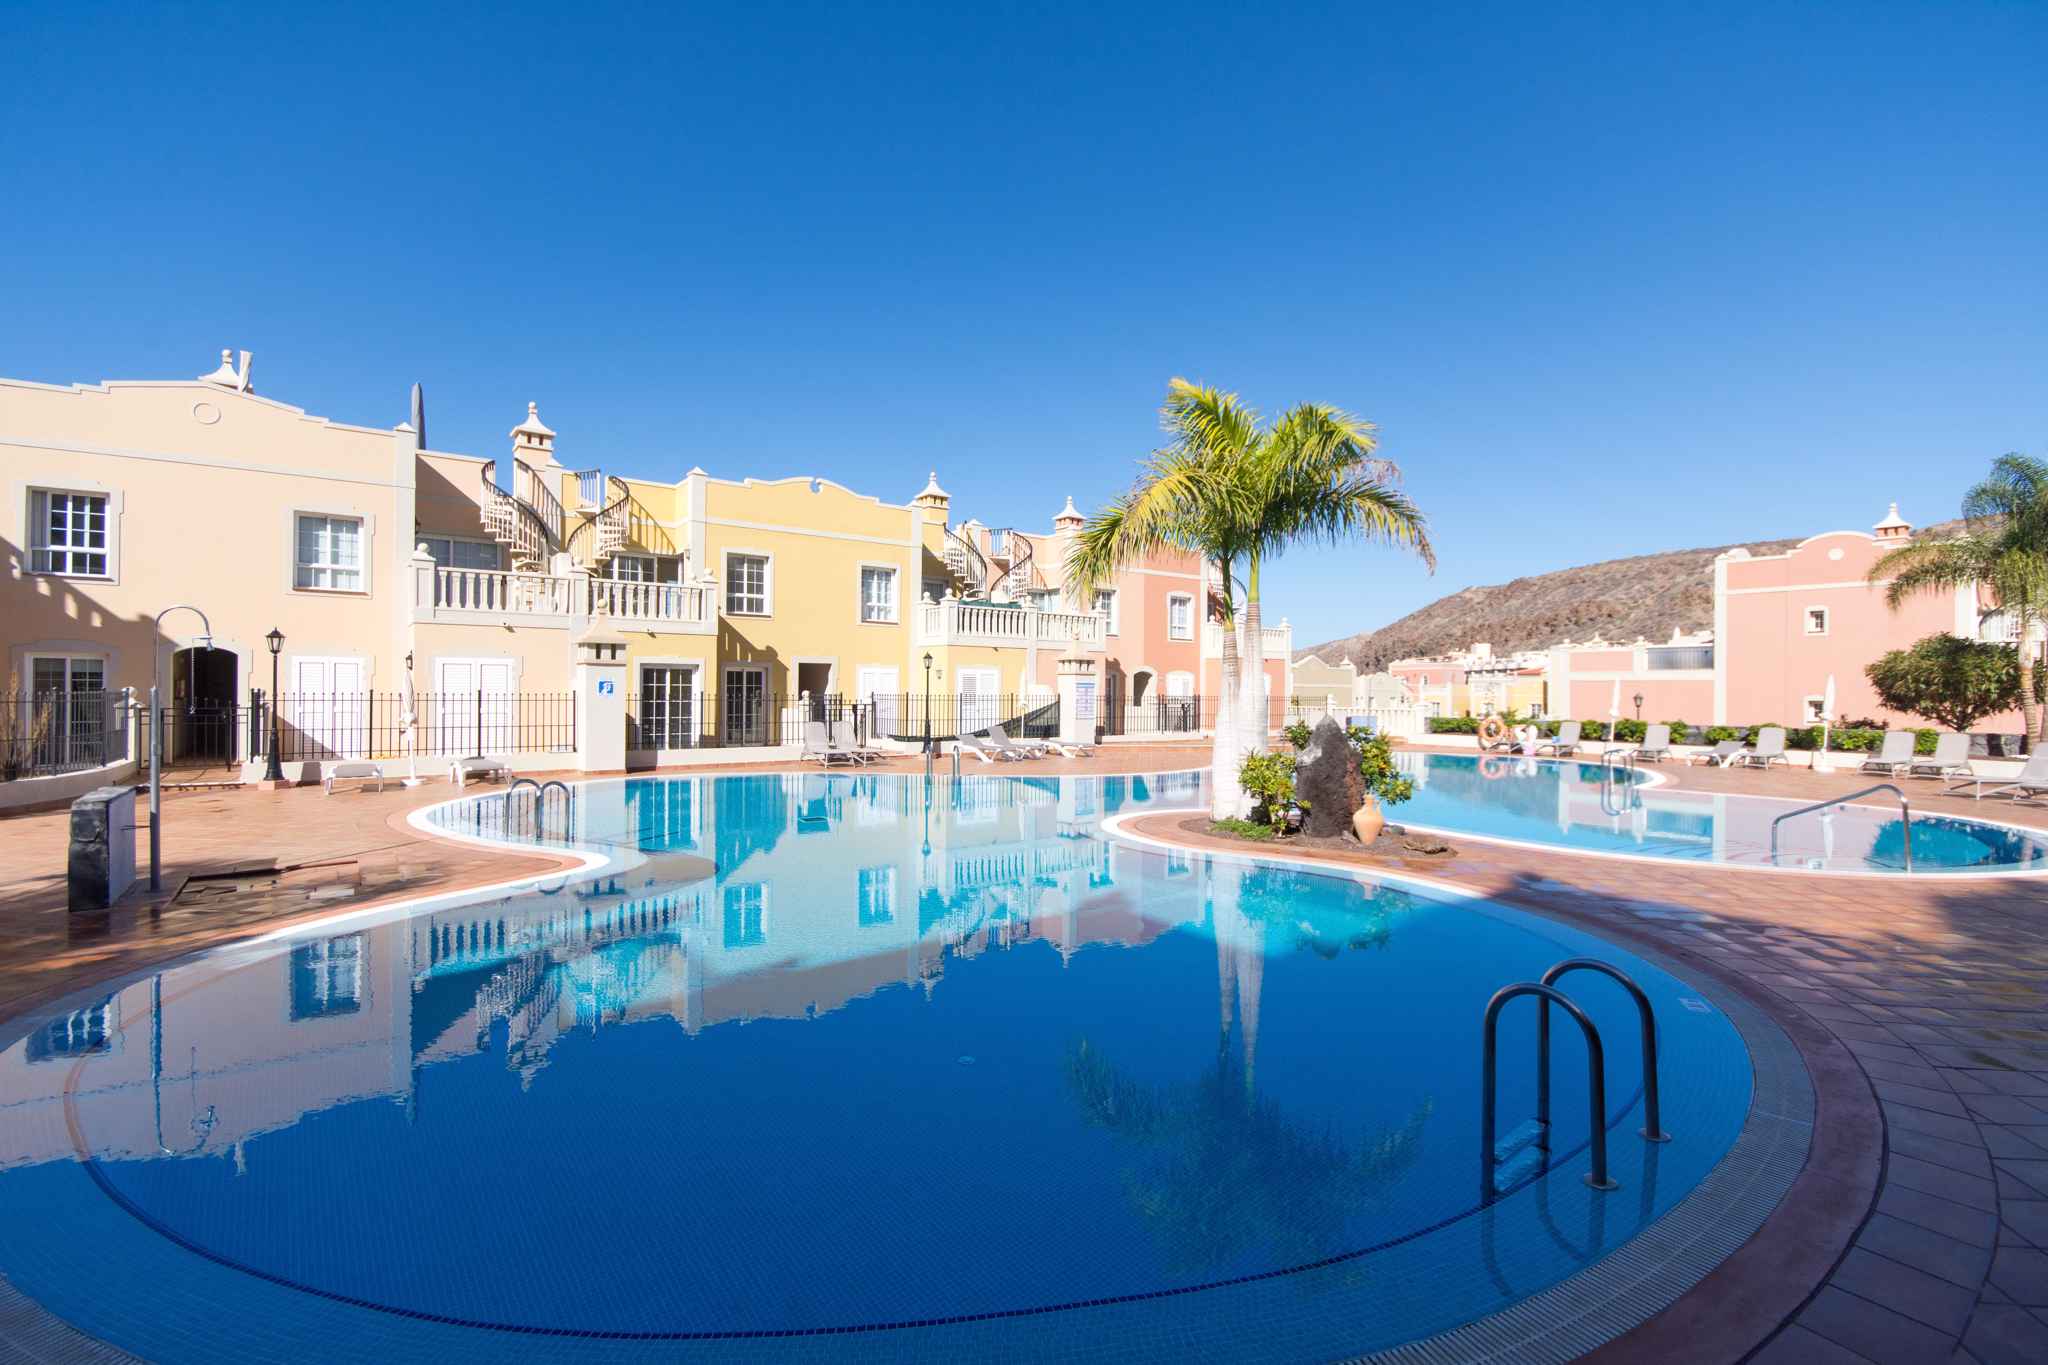 Ferienwohnung mit Pool in Ferienanlage (2377552), Palm-Mar, Teneriffa, Kanarische Inseln, Spanien, Bild 15